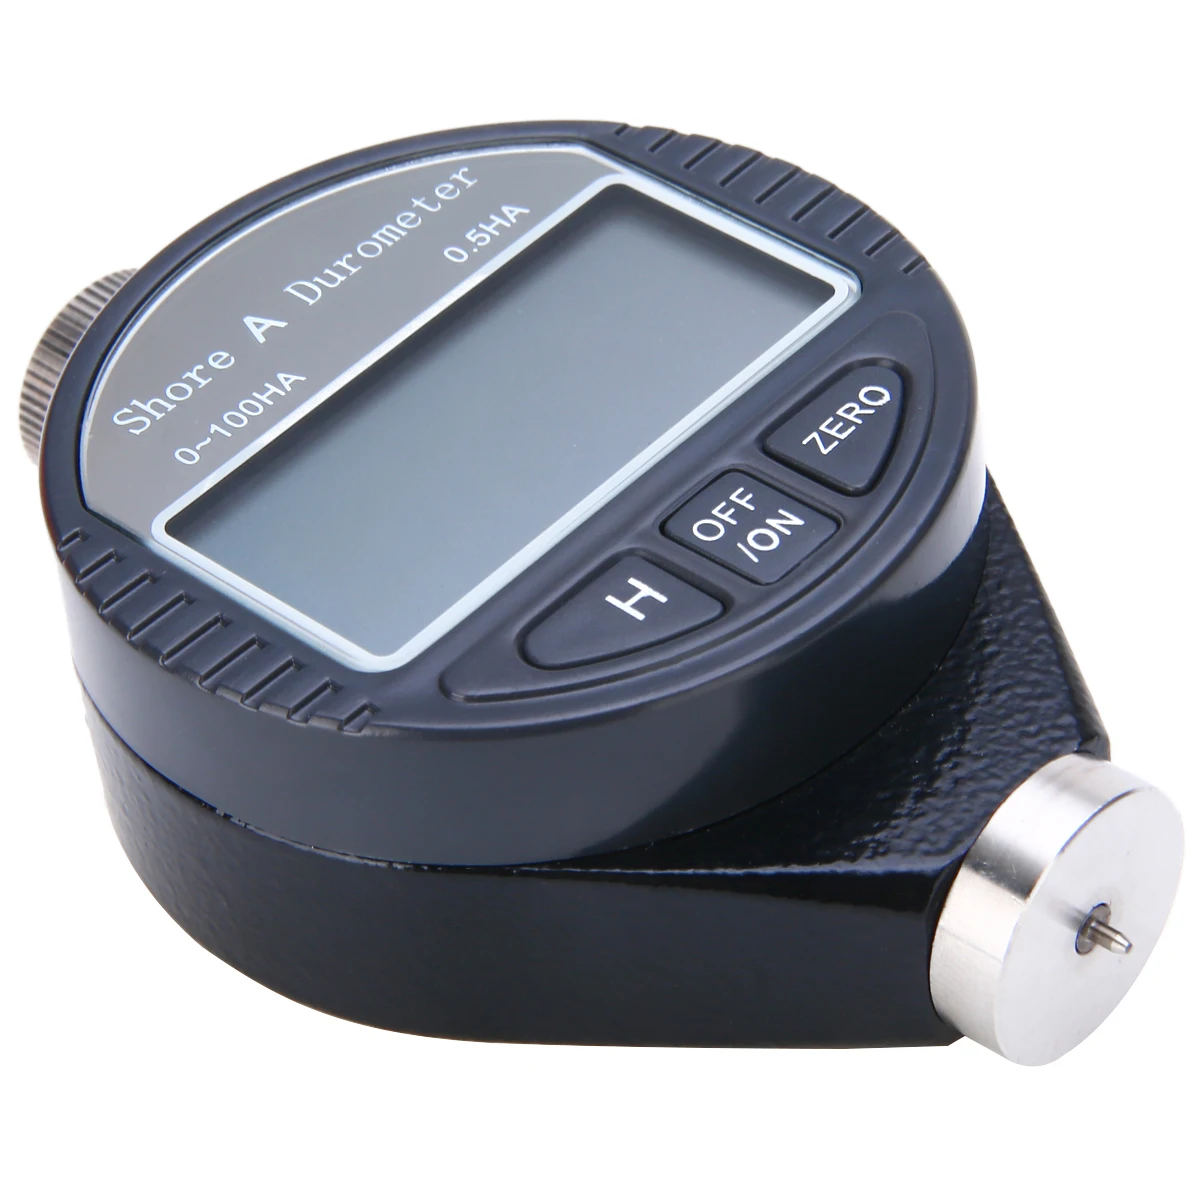 Профессиональный Измеритель Твердости дюрометр 0-100HA цифровой тестер твердости дюрометр с ЖК-дисплеем для резины, пластика, кожи